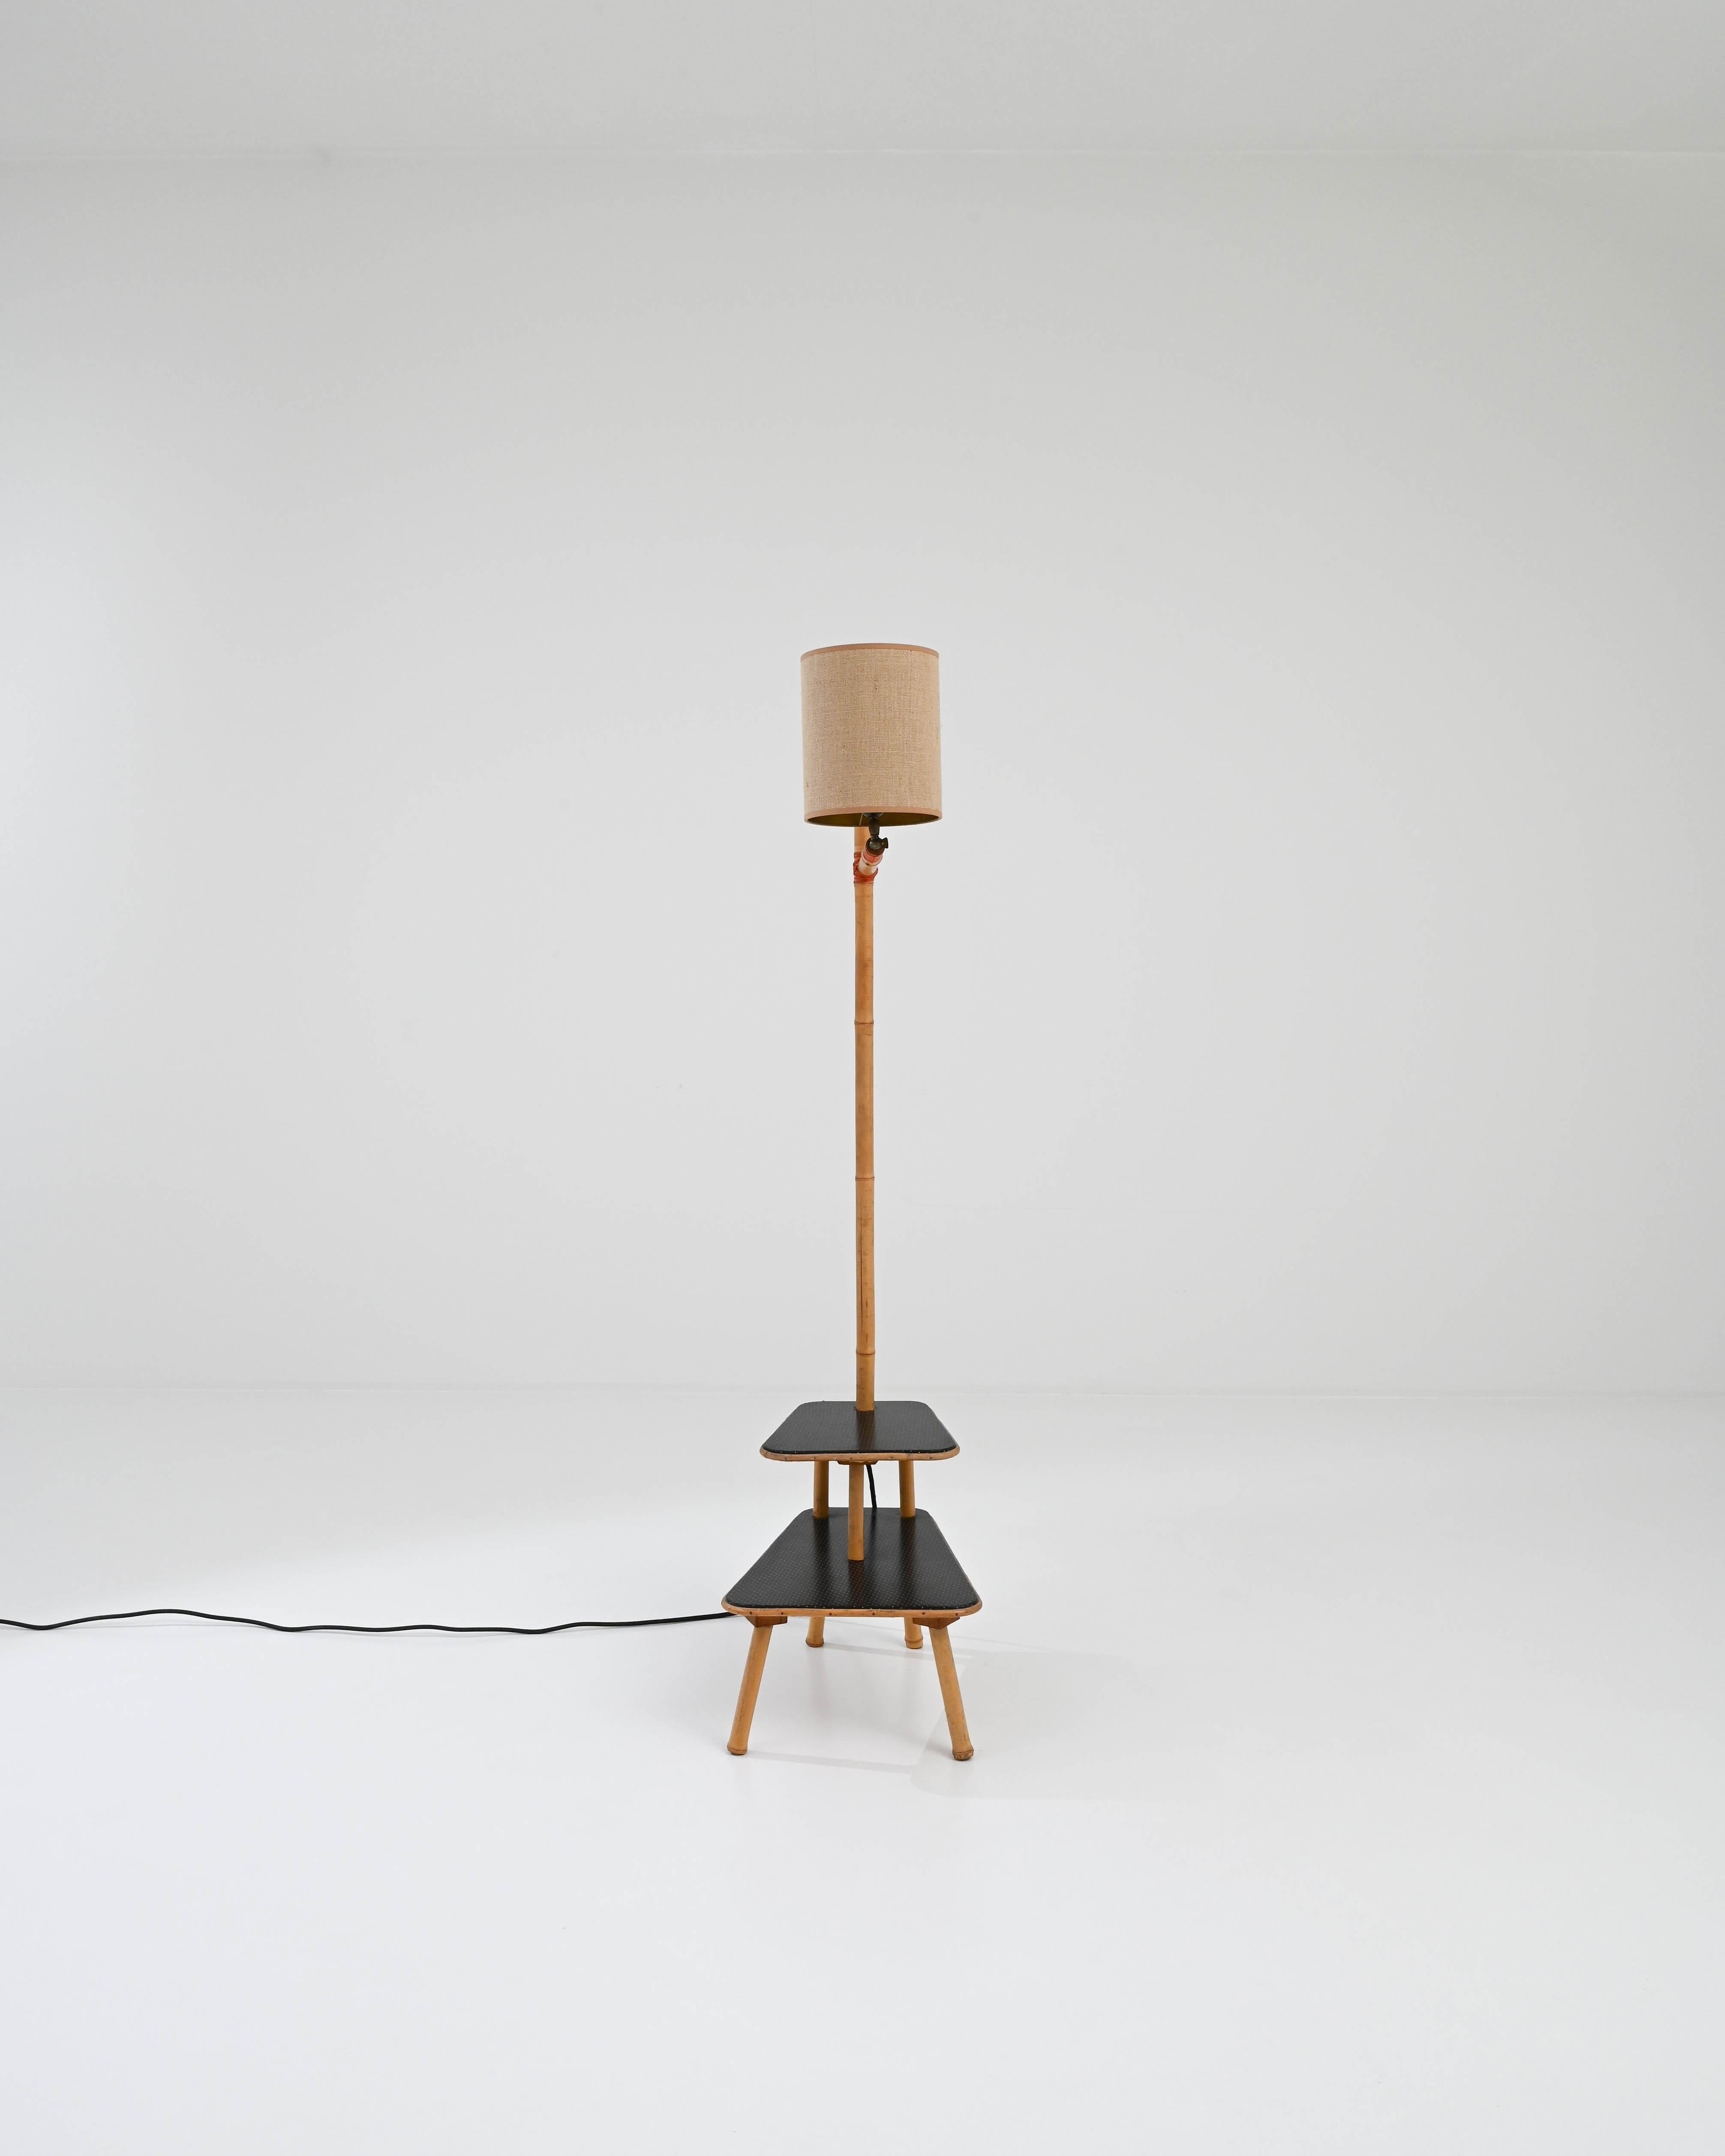 Un lampadaire en bambou qui s'intègre parfaitement dans tout espace de lecture et de pause. Assez polyvalente pour servir de table de chevet, de table d'appoint, de présentoir de livres ou simplement de lampe indépendante, sa simplicité moderniste